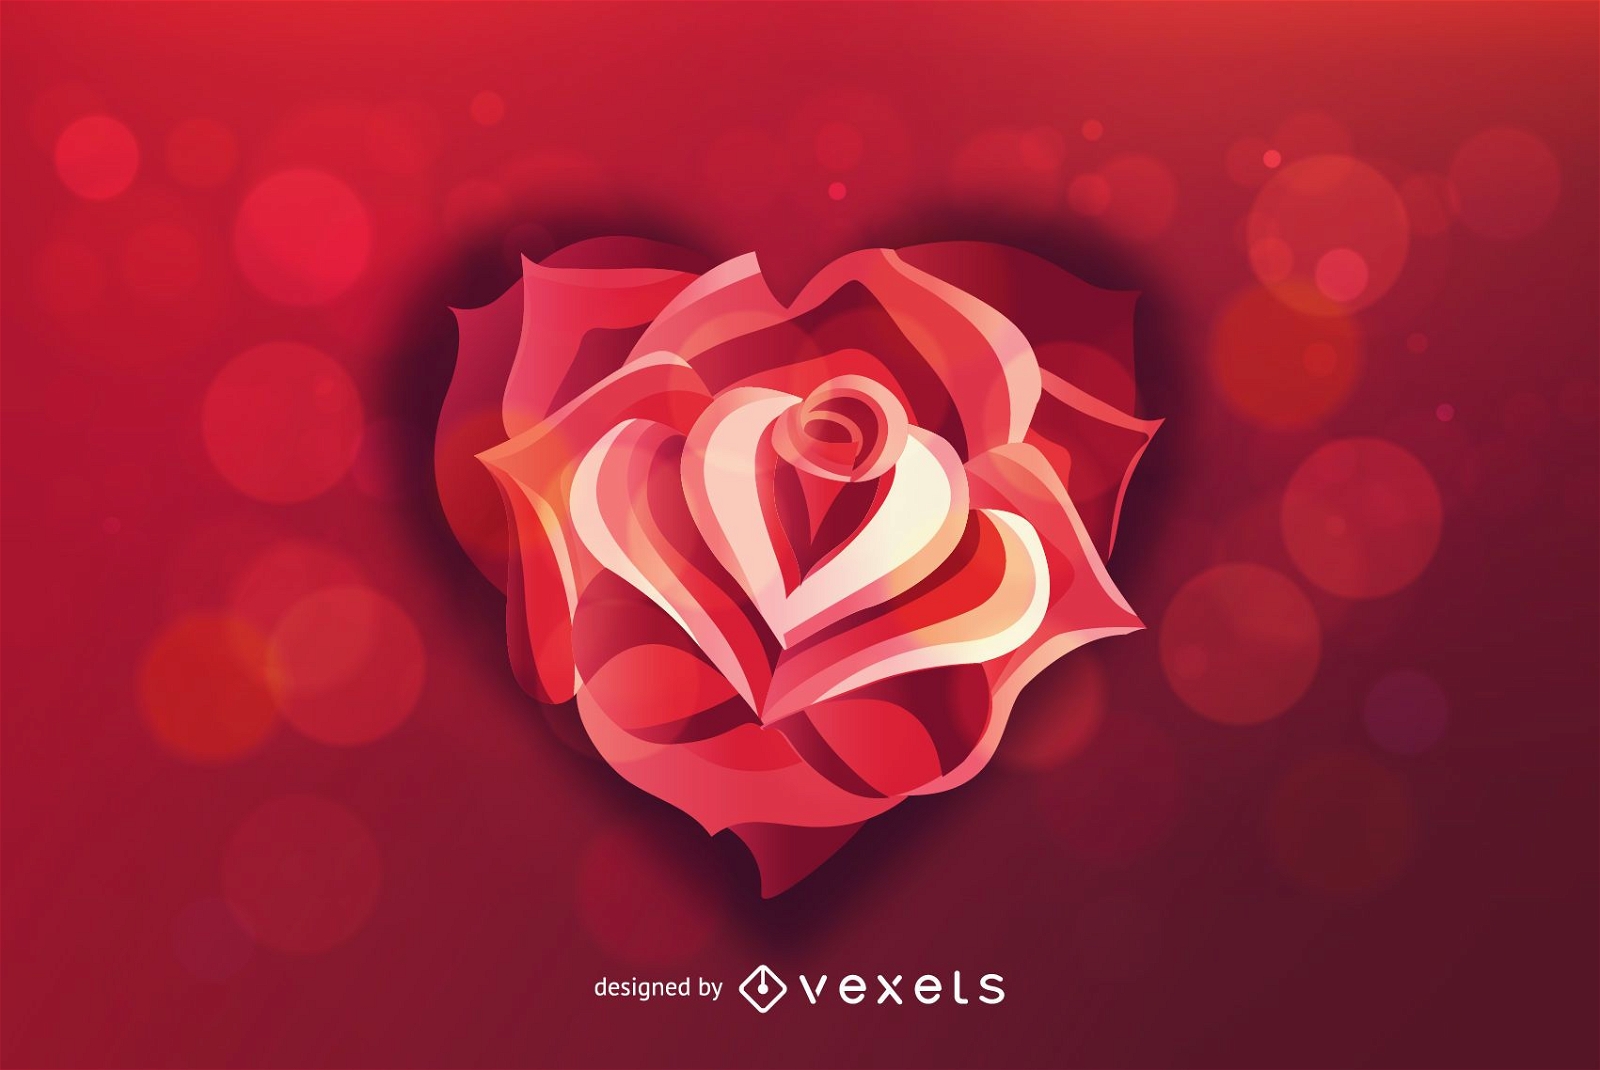 Rose Heart Valentine Background